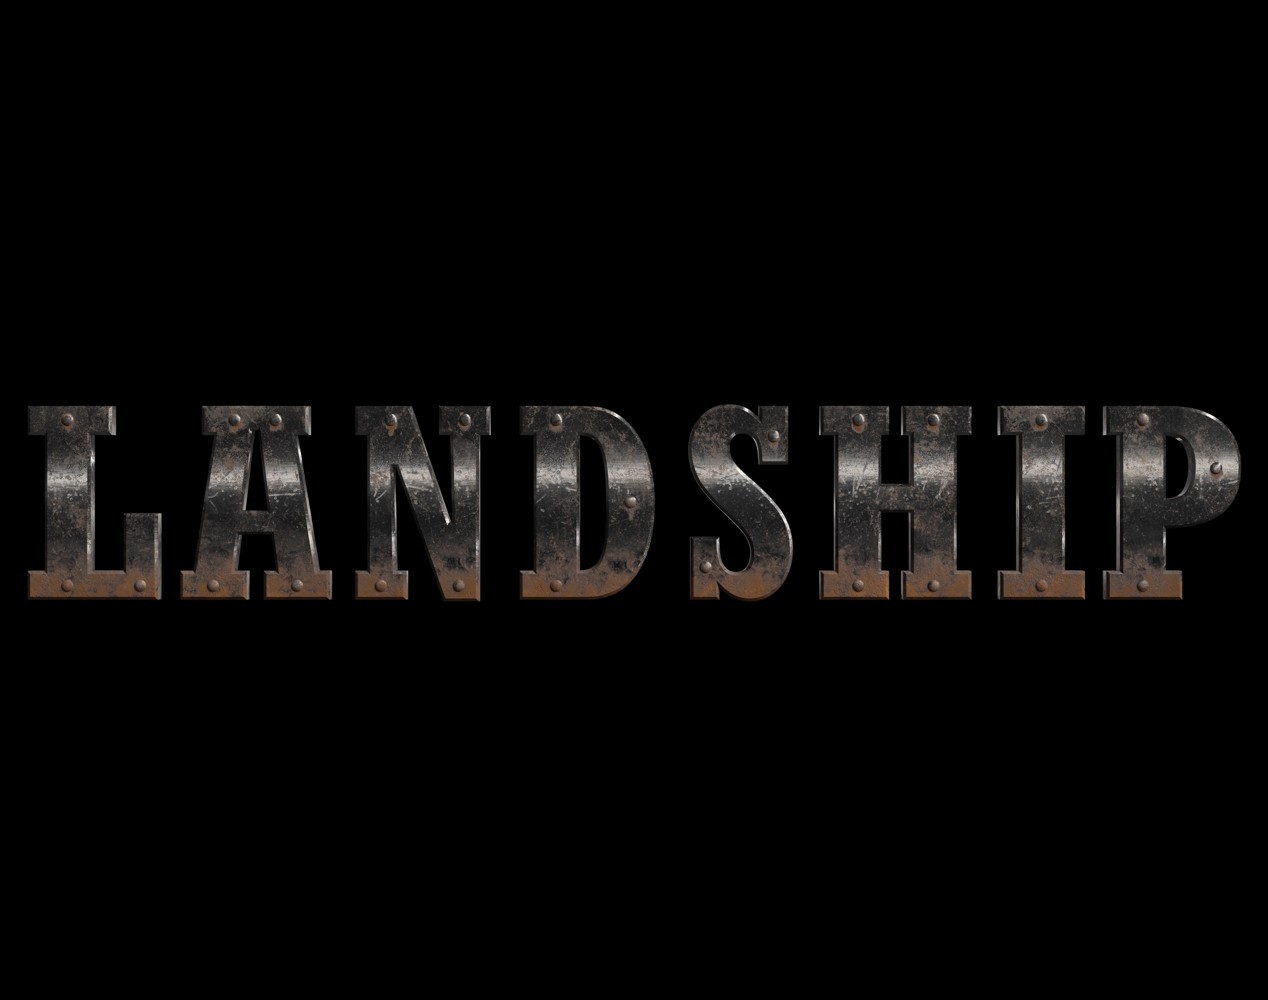 Landship(1268_72dpi)